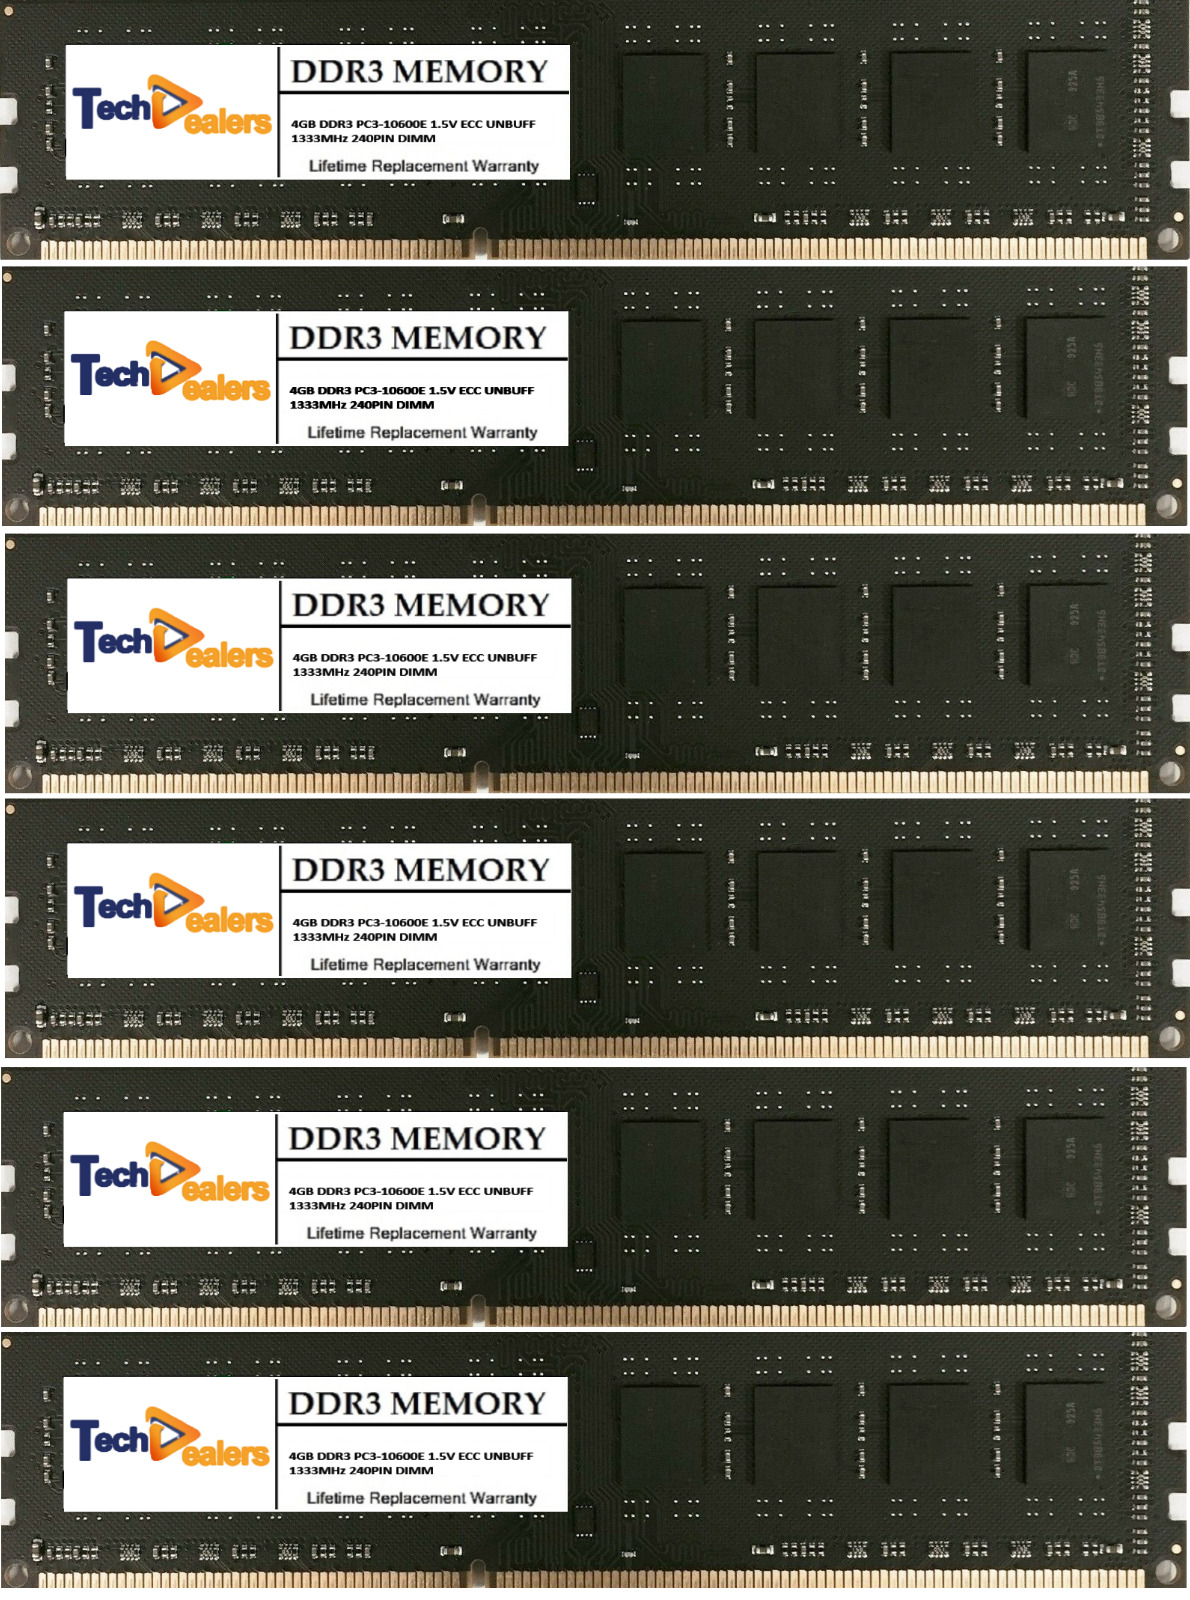  24GB (6 X4GB) DDR3 PC3-10600  ECC UNBUFFERED MEMORY FOR DELL PRECISION T3500